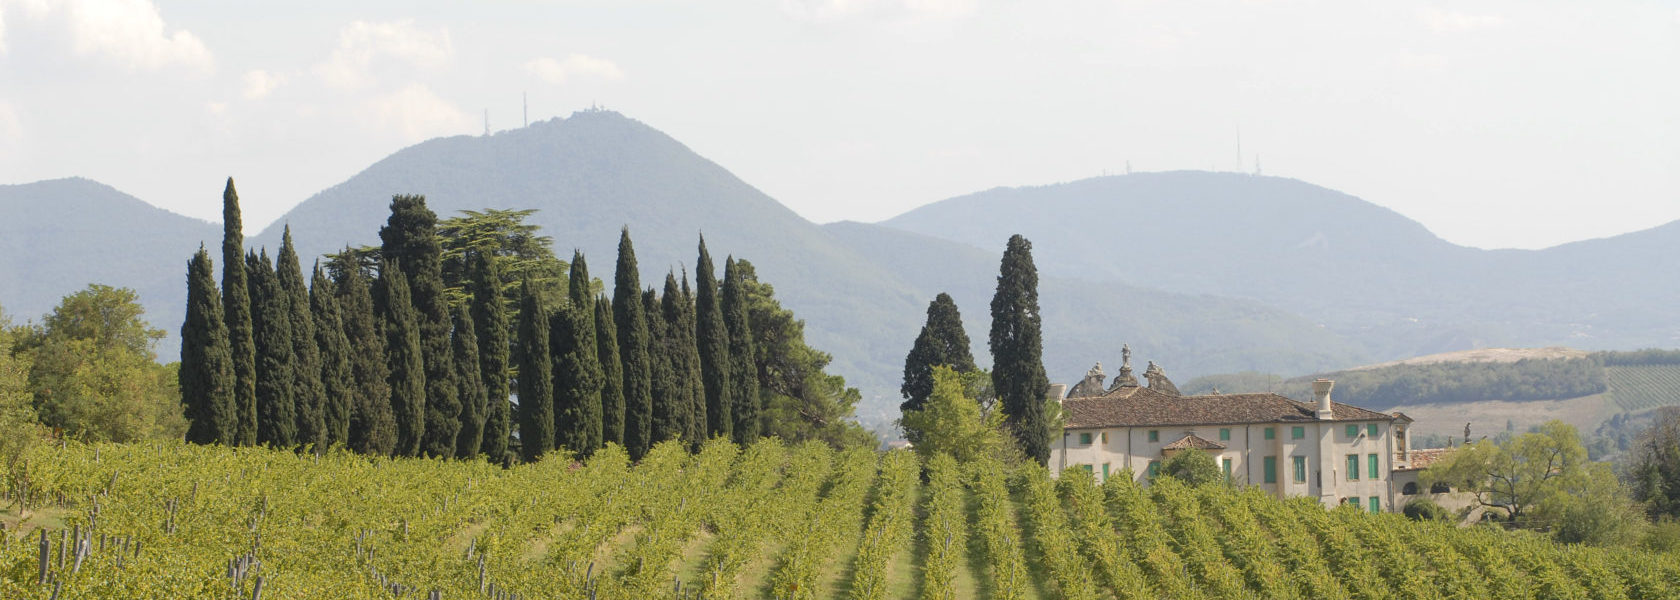 Visuale della collina vicentina con vigneti e cipressi dietro la Villa di Montruglio.